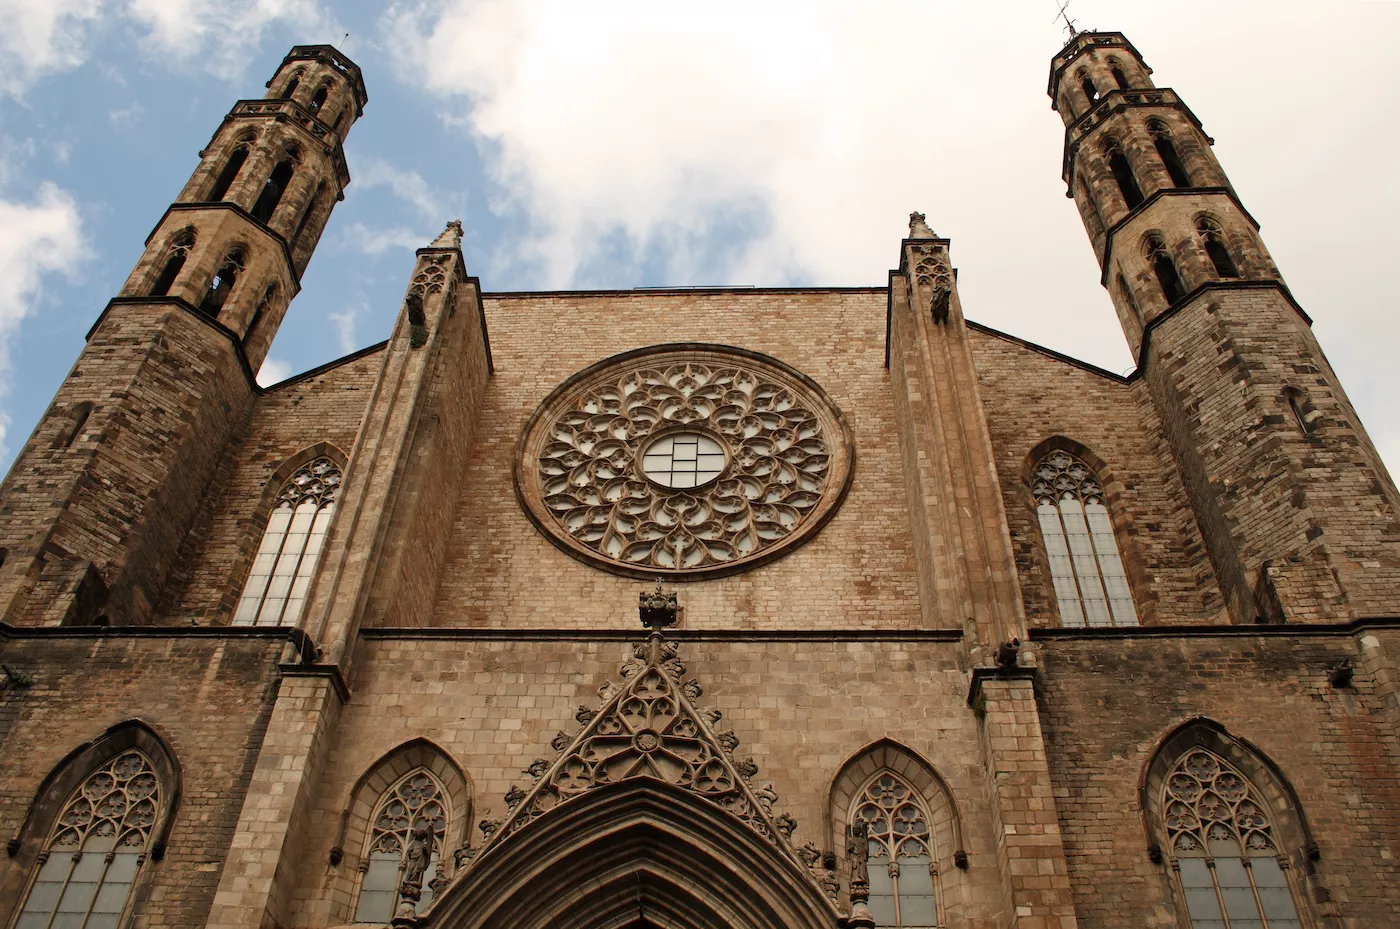 Façana de l’església de Santa Maria del Mar, construïda com a mostra del poder econòmic dels habitants del barri, en un temps rècord (entre el 1329 i el 1383). En deien ‘la catedral del poble’ perquè era la parròquia dels armadors, mercaders i pescadors